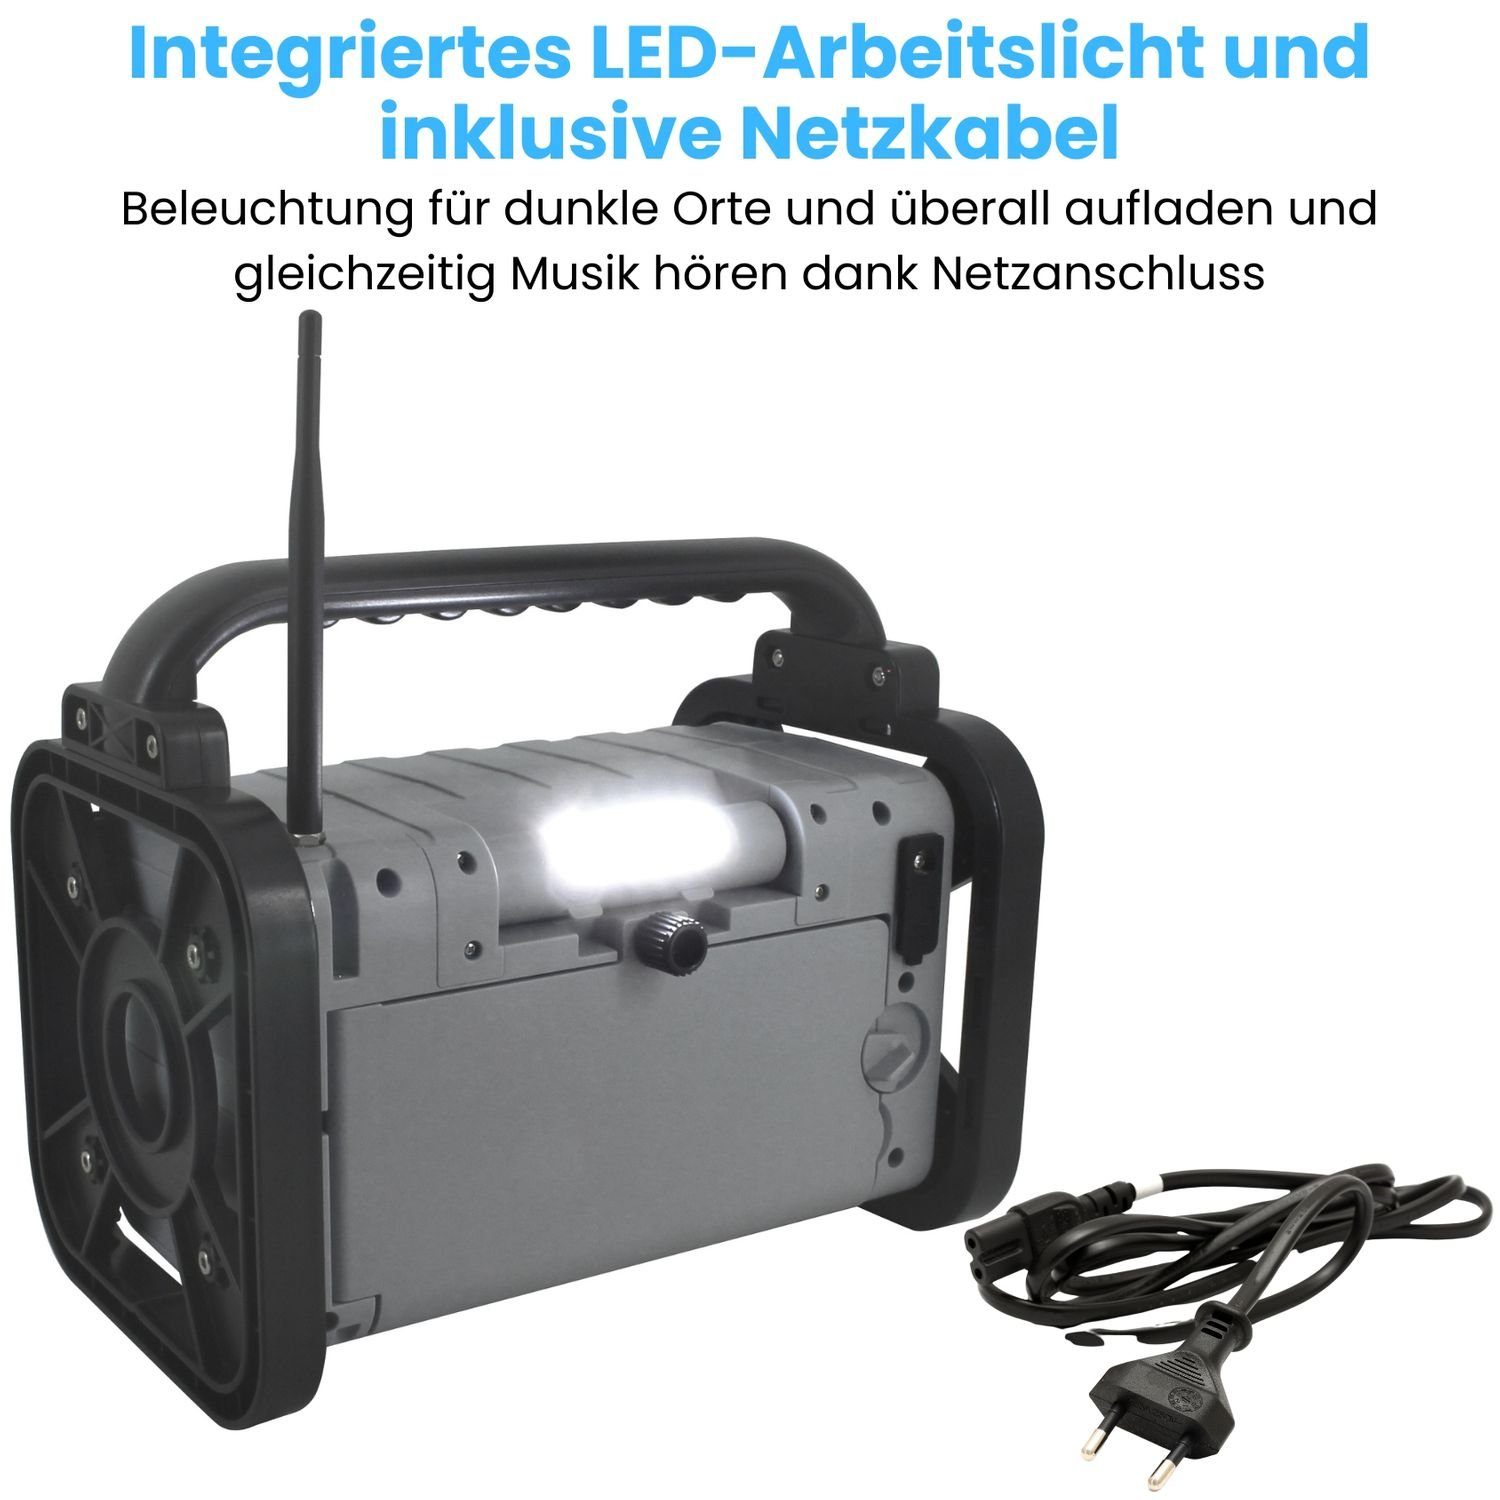 FM, PLL-UKW, (DAB+, Bluetooth IP44 Akku Baustellenradio spritzwassergeschützt Digitalradio MW, DAB80OR (DAB) DAB+ AM) Soundmaster